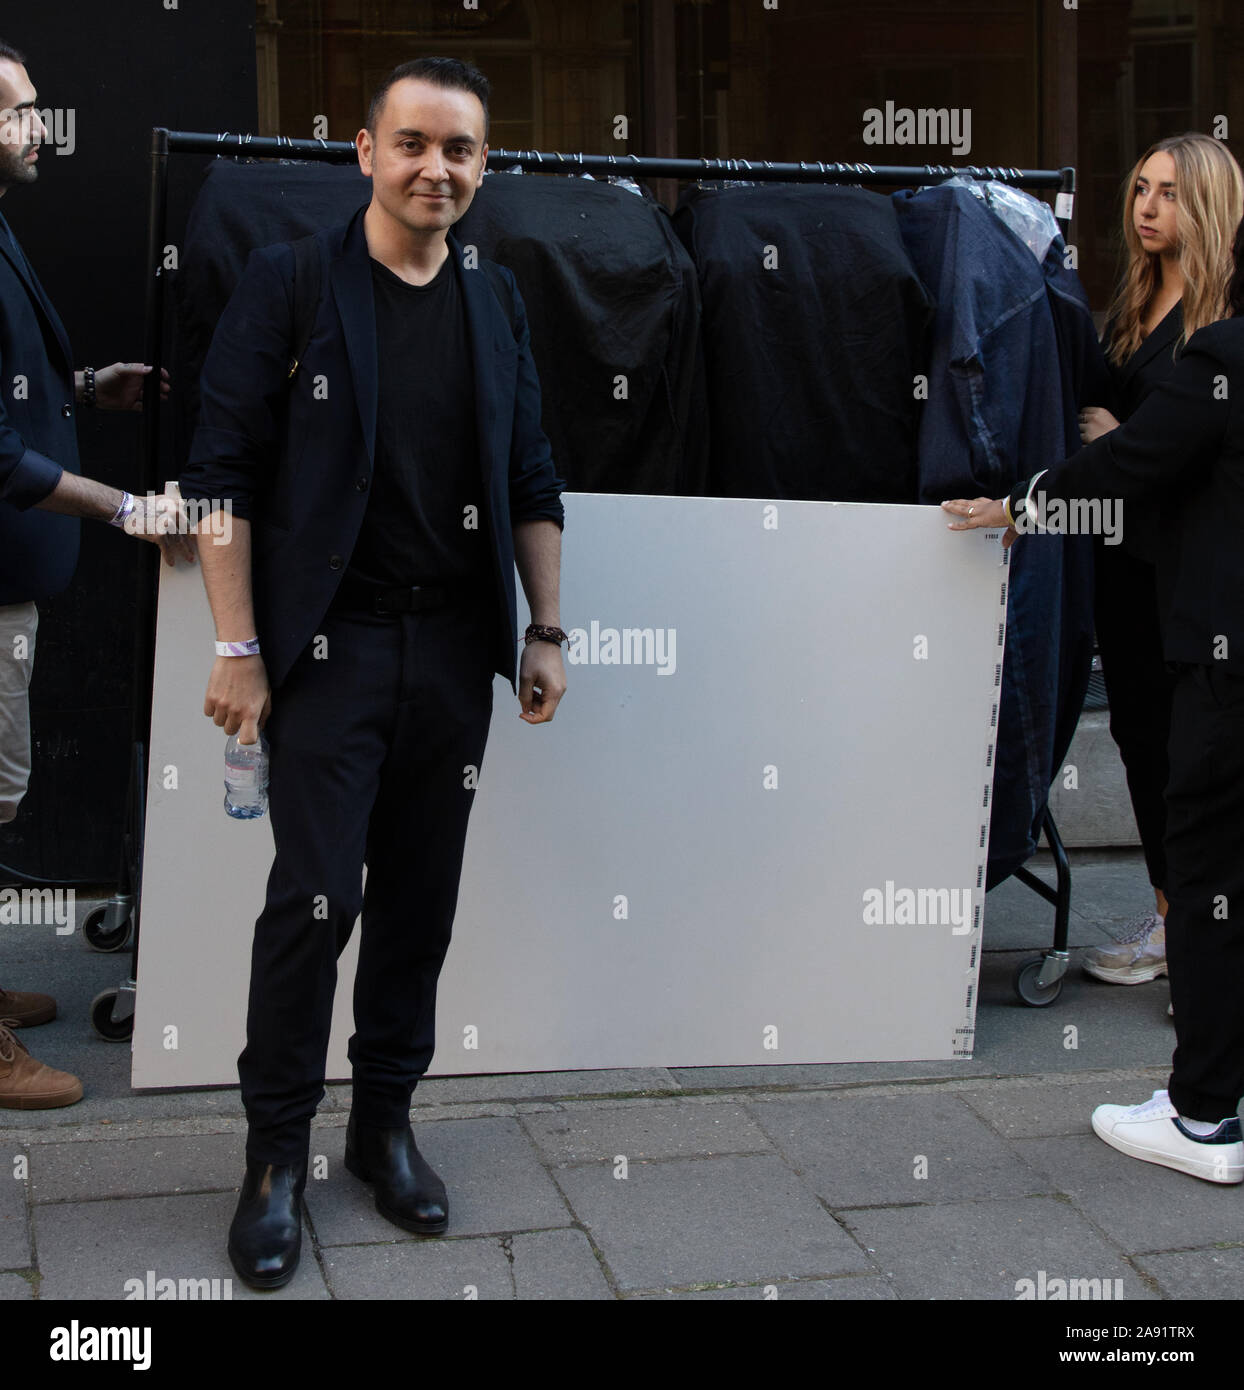 Londres, Royaume-Uni. 13 Septembre, 2019. Fashion designer né turc Bora Aksu vu en dehors du magasin X sur 180 Strand, avant de montrer ses dessins à la London Fashion Week Septembre 2019. Crédit : Joe Keurig / Alamy News Banque D'Images